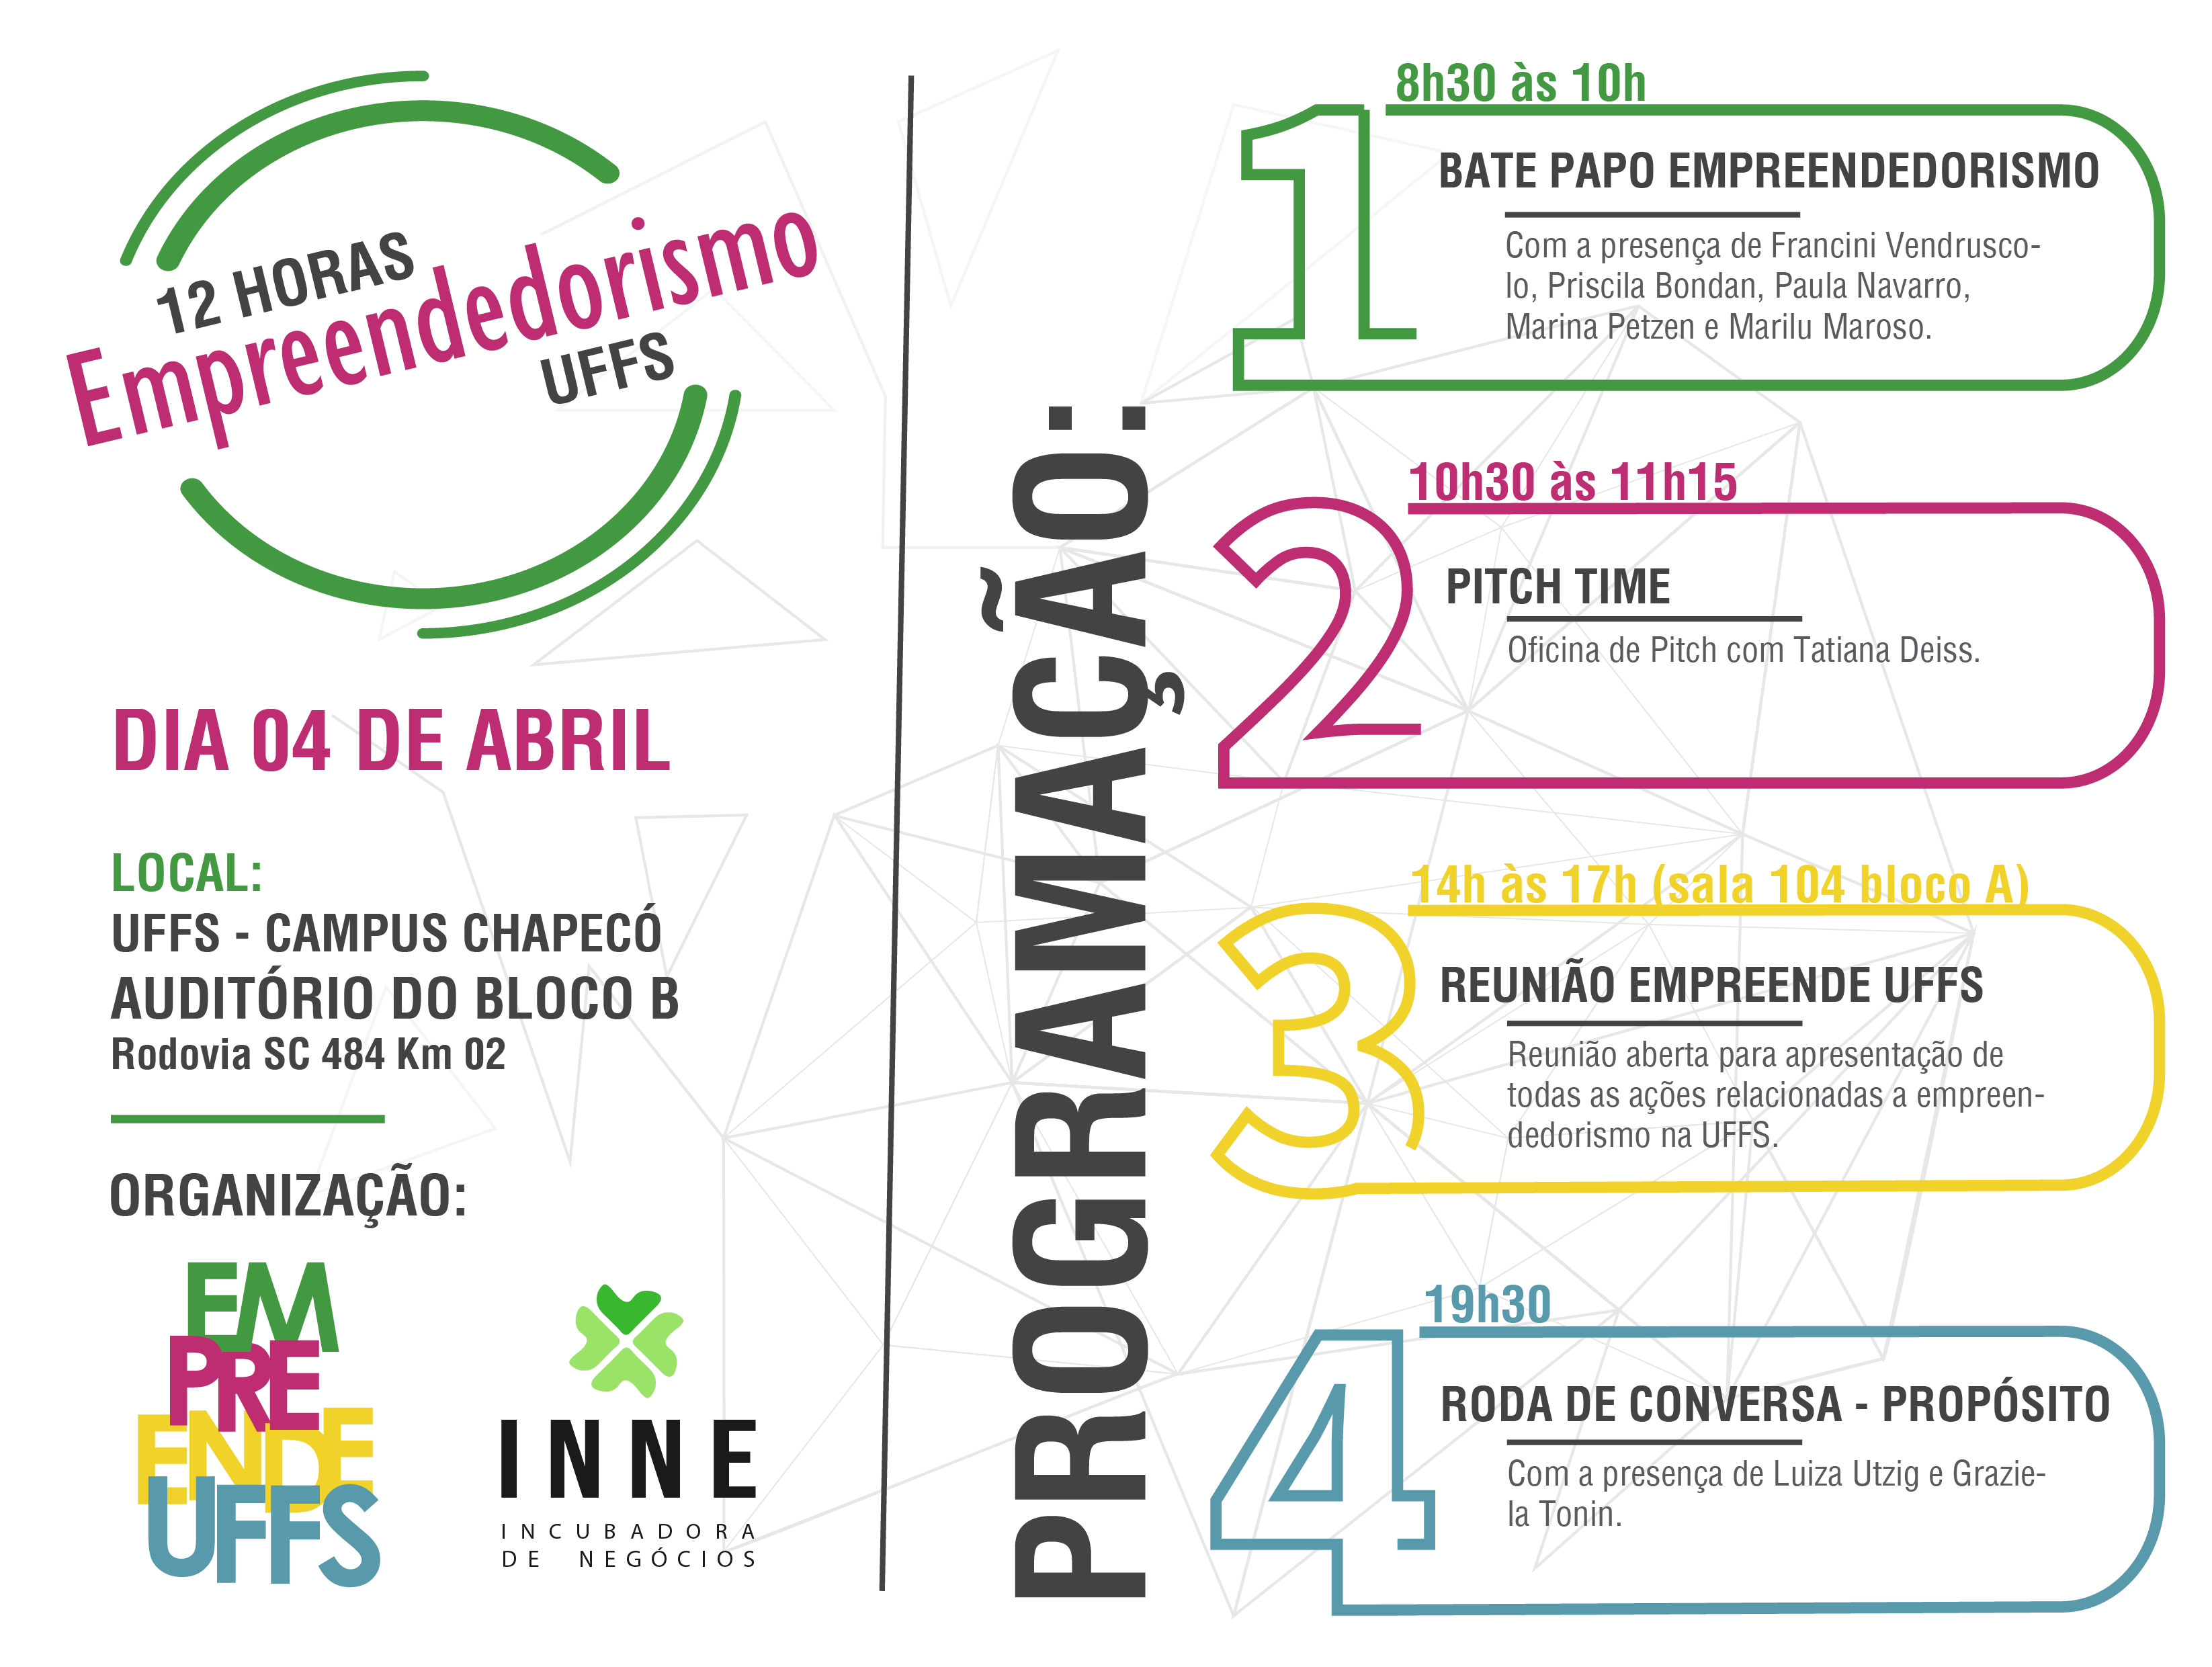 Cartaz com informações sobre evento 12 horas de empreendedorismo